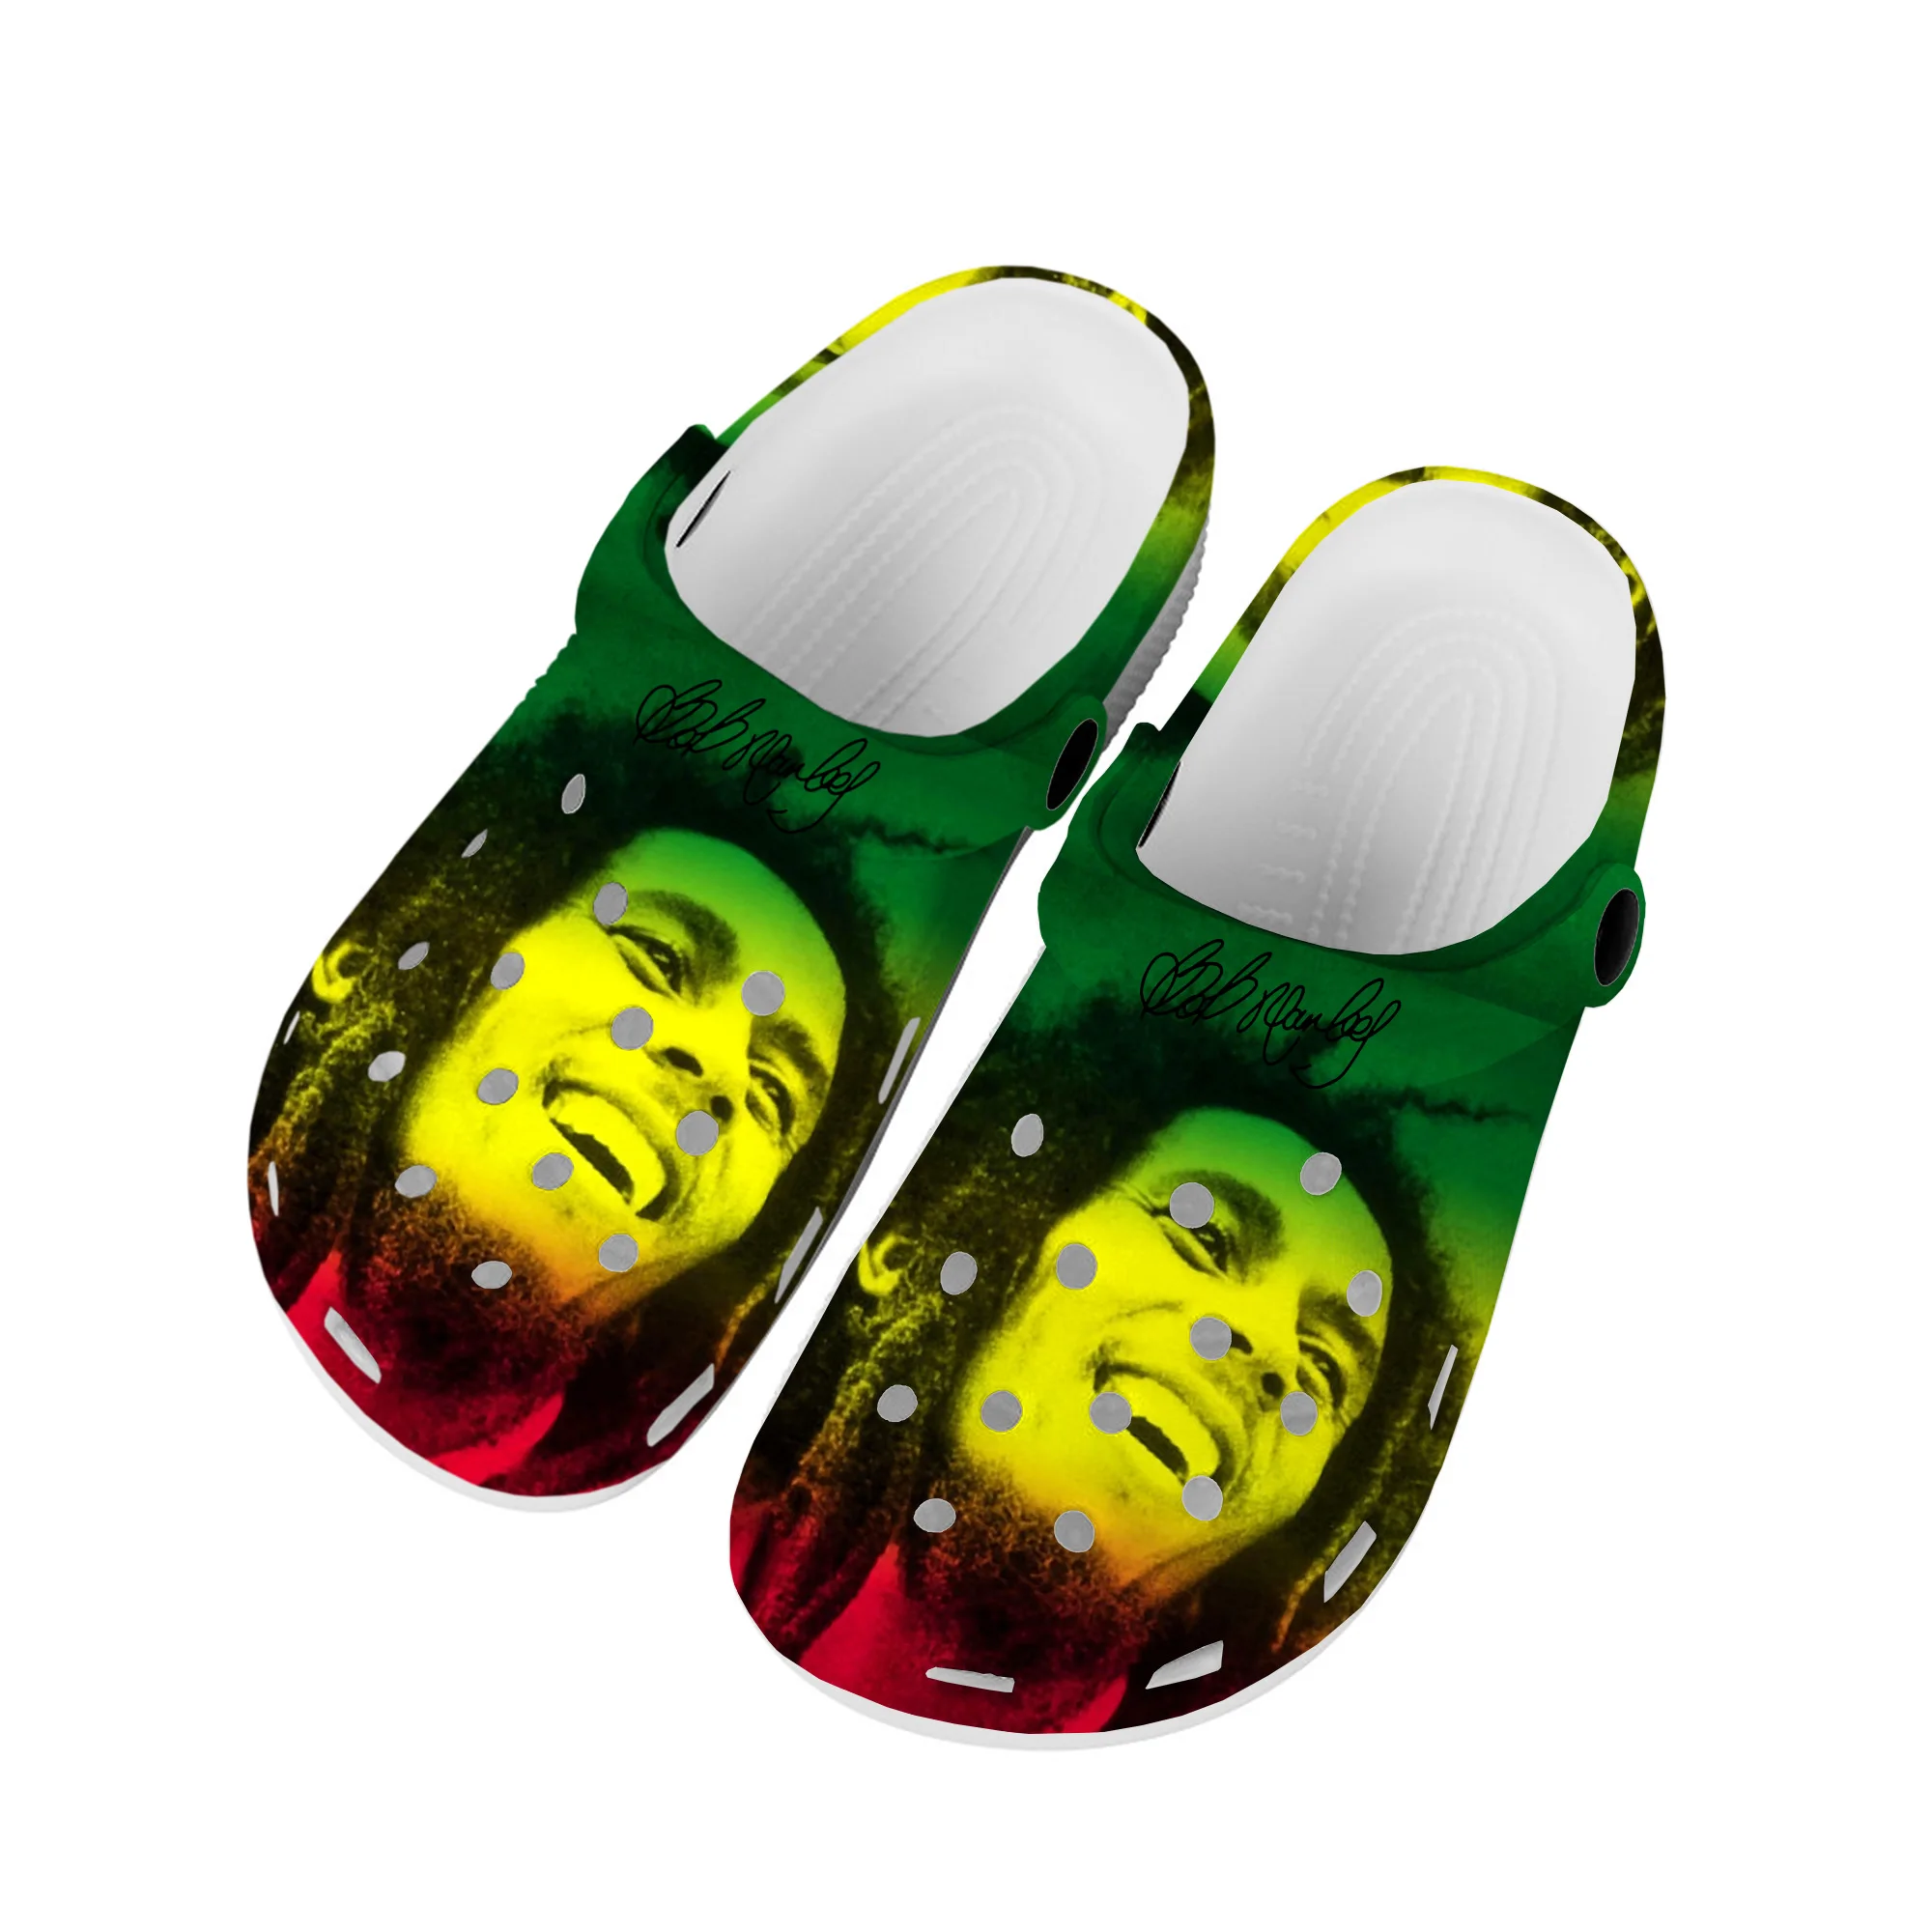 

Боб Марли Регги Раста музыкальный певец домашние Сабо под заказ обувь для воды Мужская Женская подростковая обувь садовые туфли Сабо пляжные тапочки с дырками